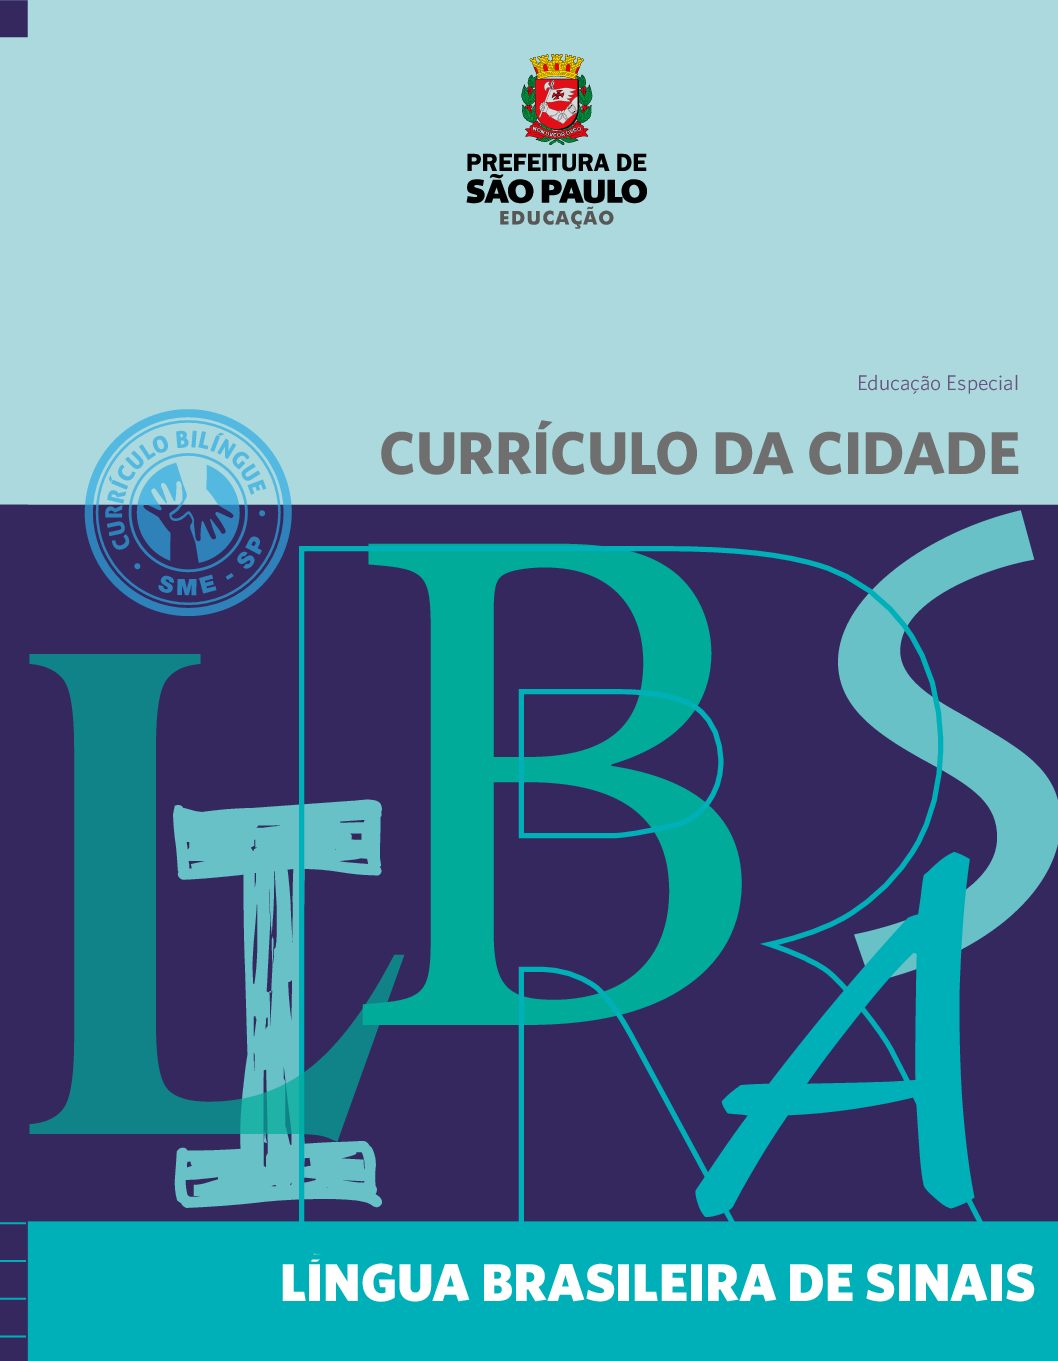 Currículo da Cidade para Educação Especial: componente curricular: Língua Brasileira de Sinais - Libras.